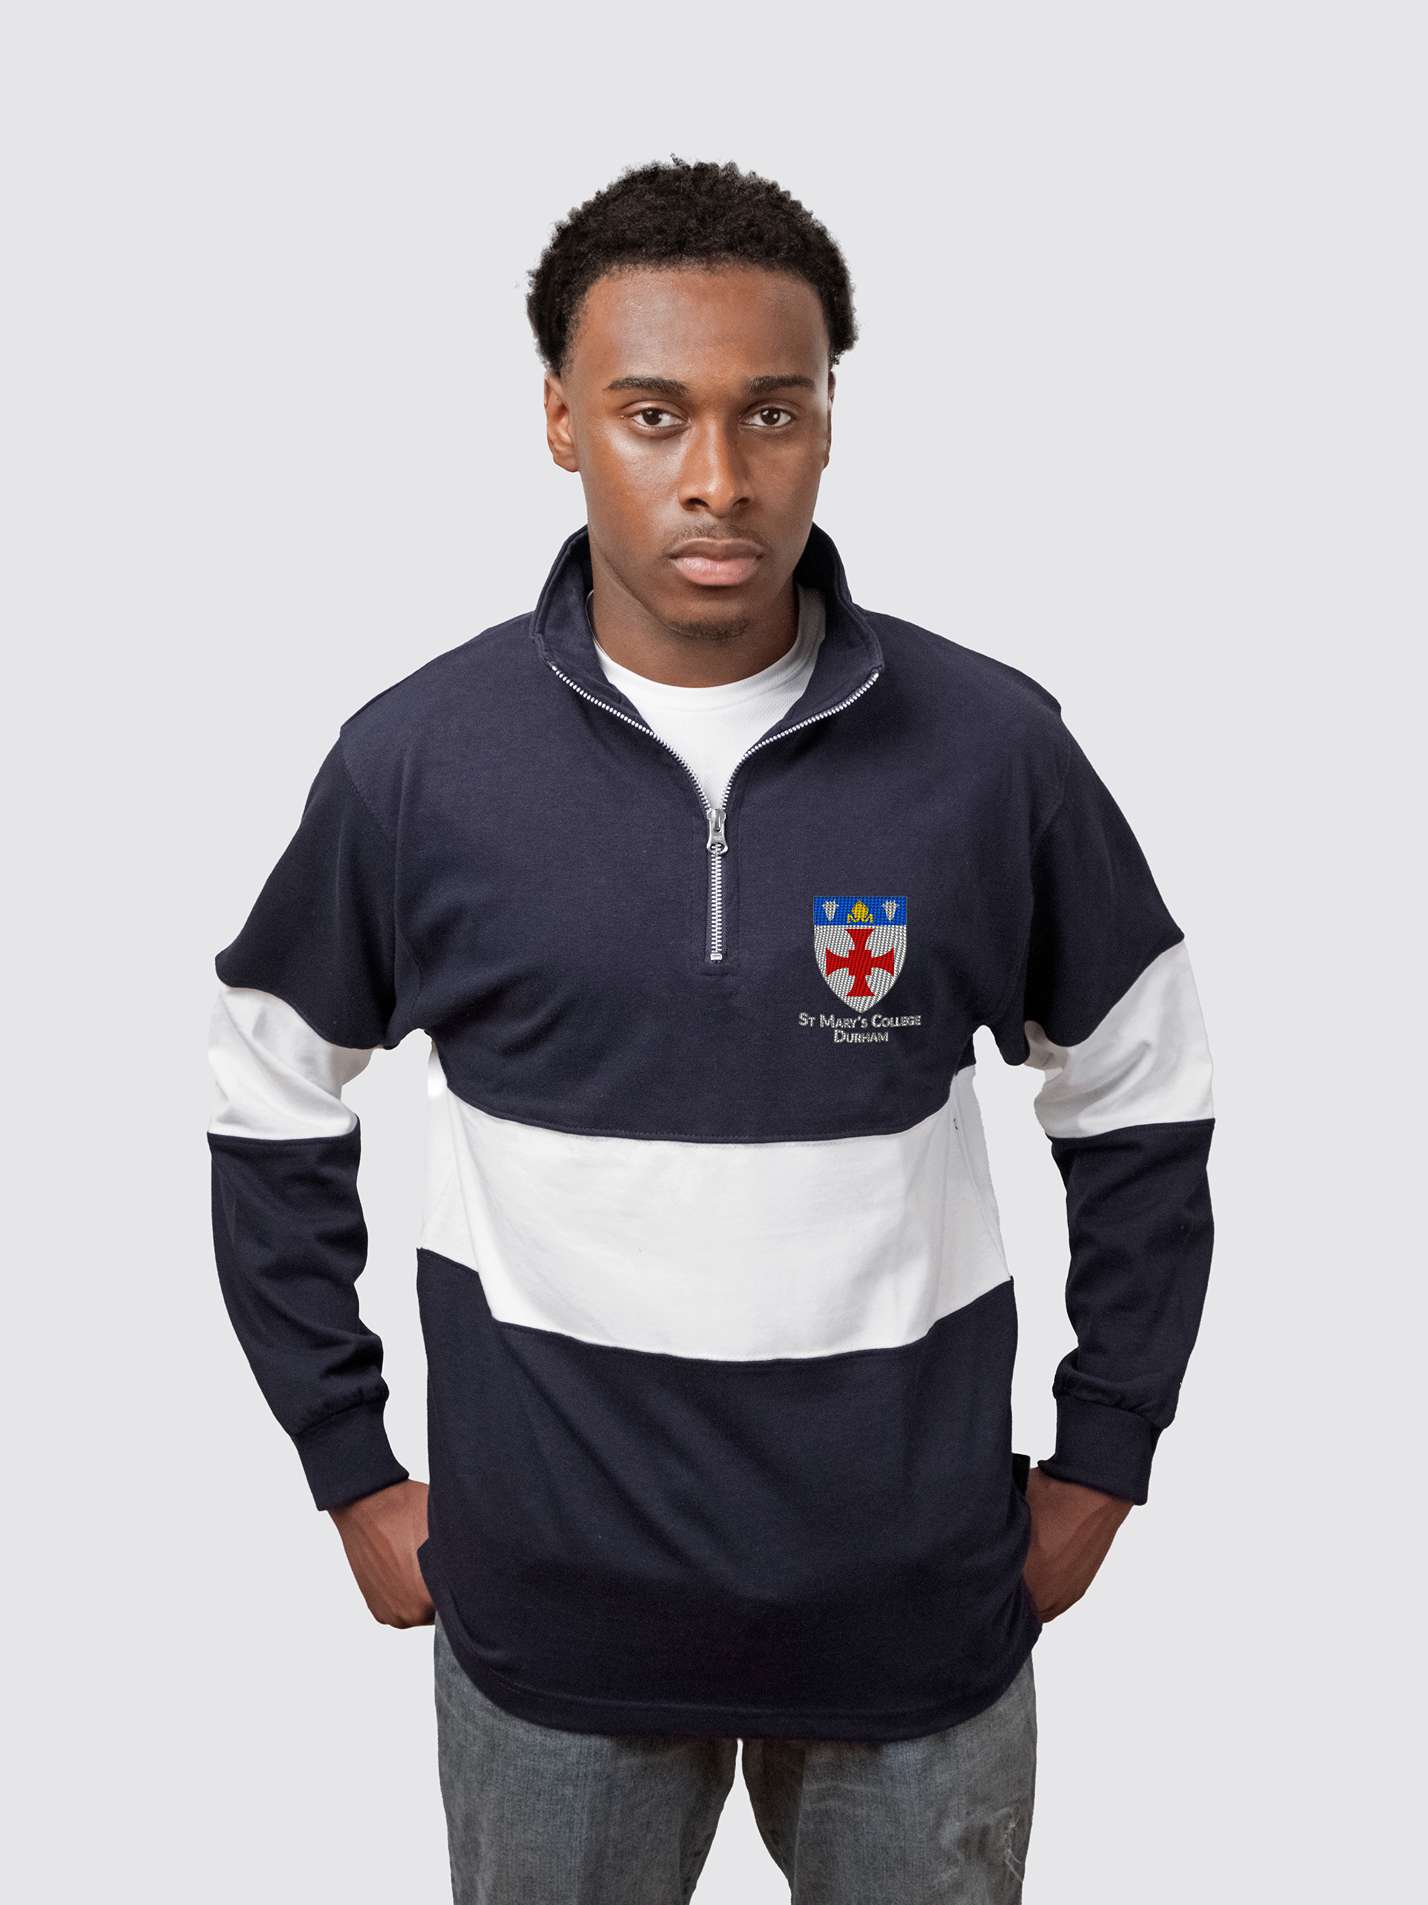 St Mary's College Durham Unisex Panelled 1/4 Zip Sweatshirt